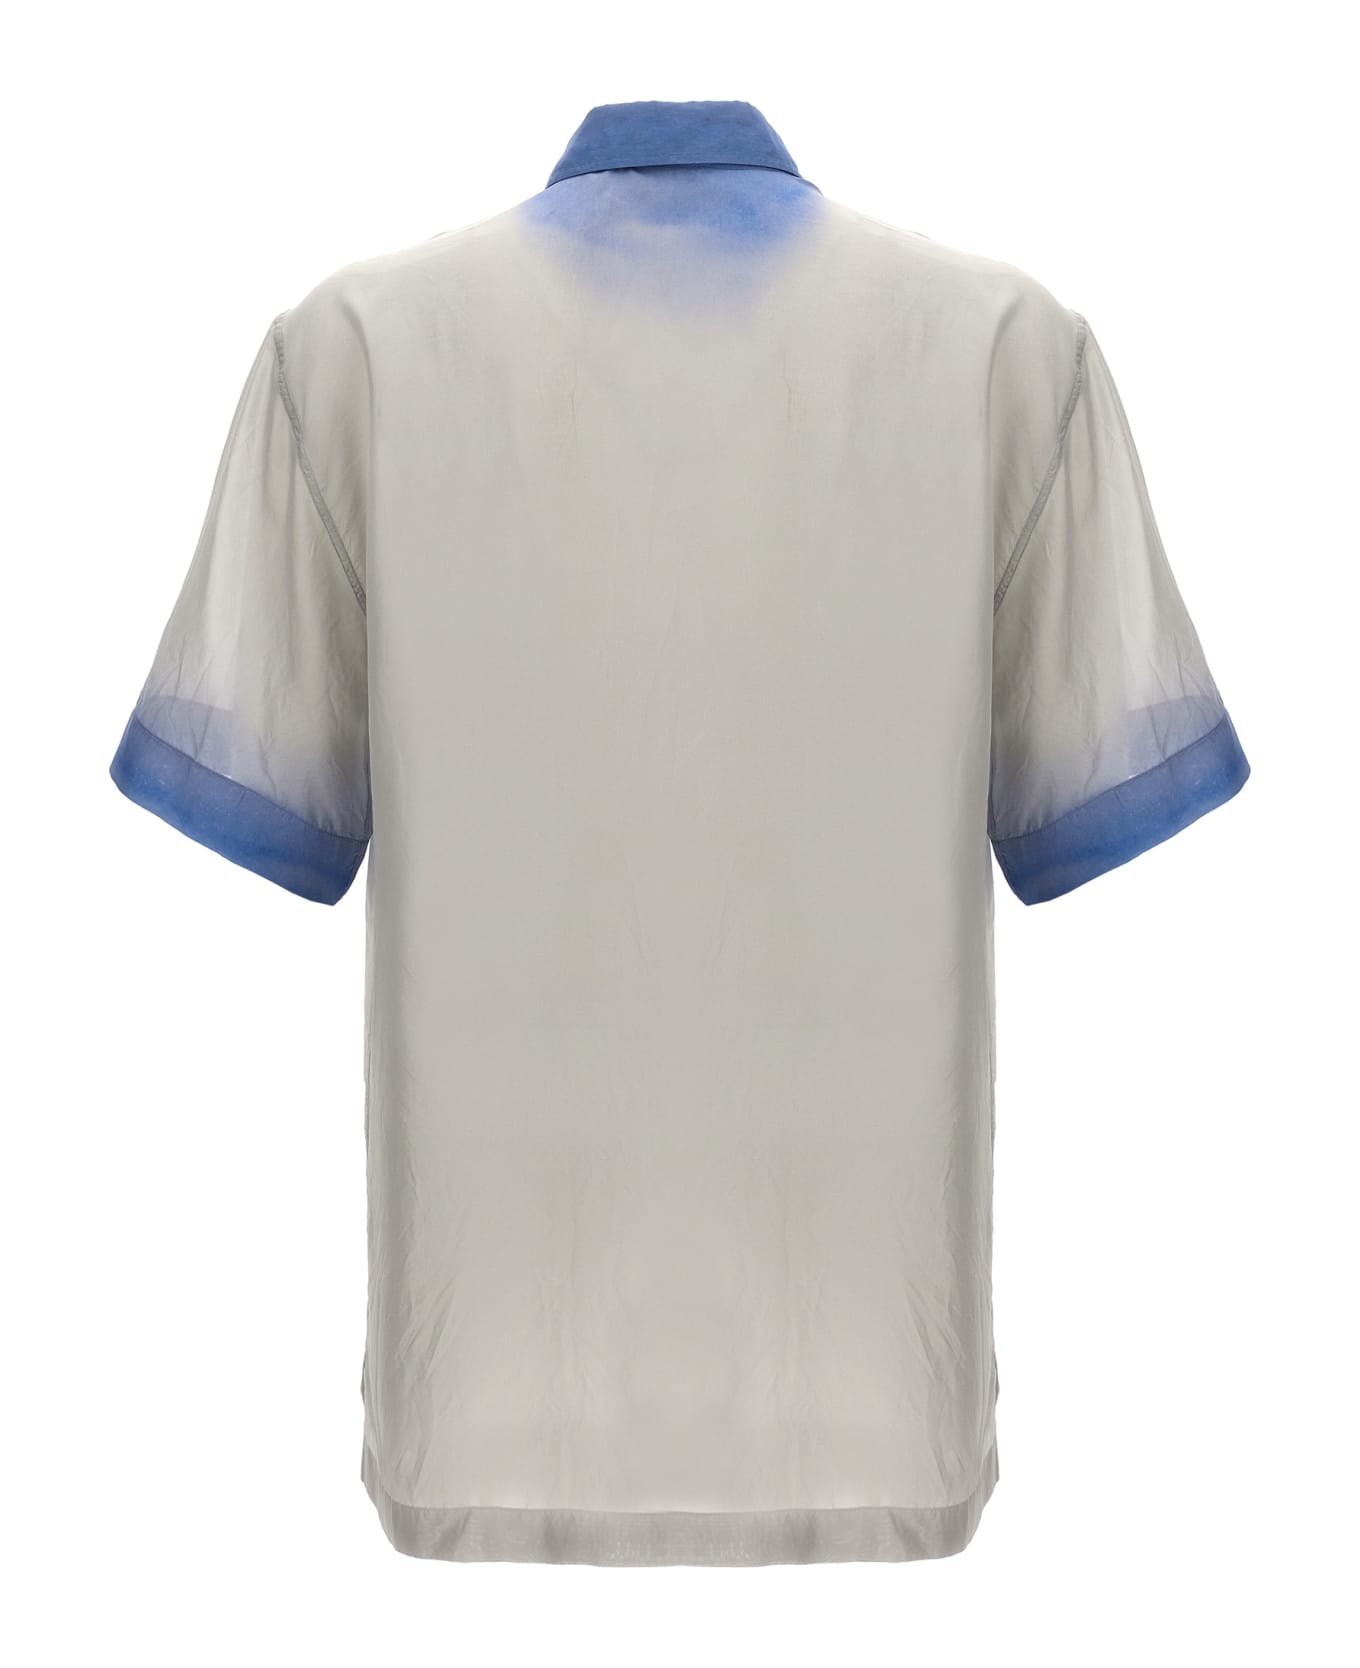 Dries Van Noten 'cassidye' Shirt - Light Blue